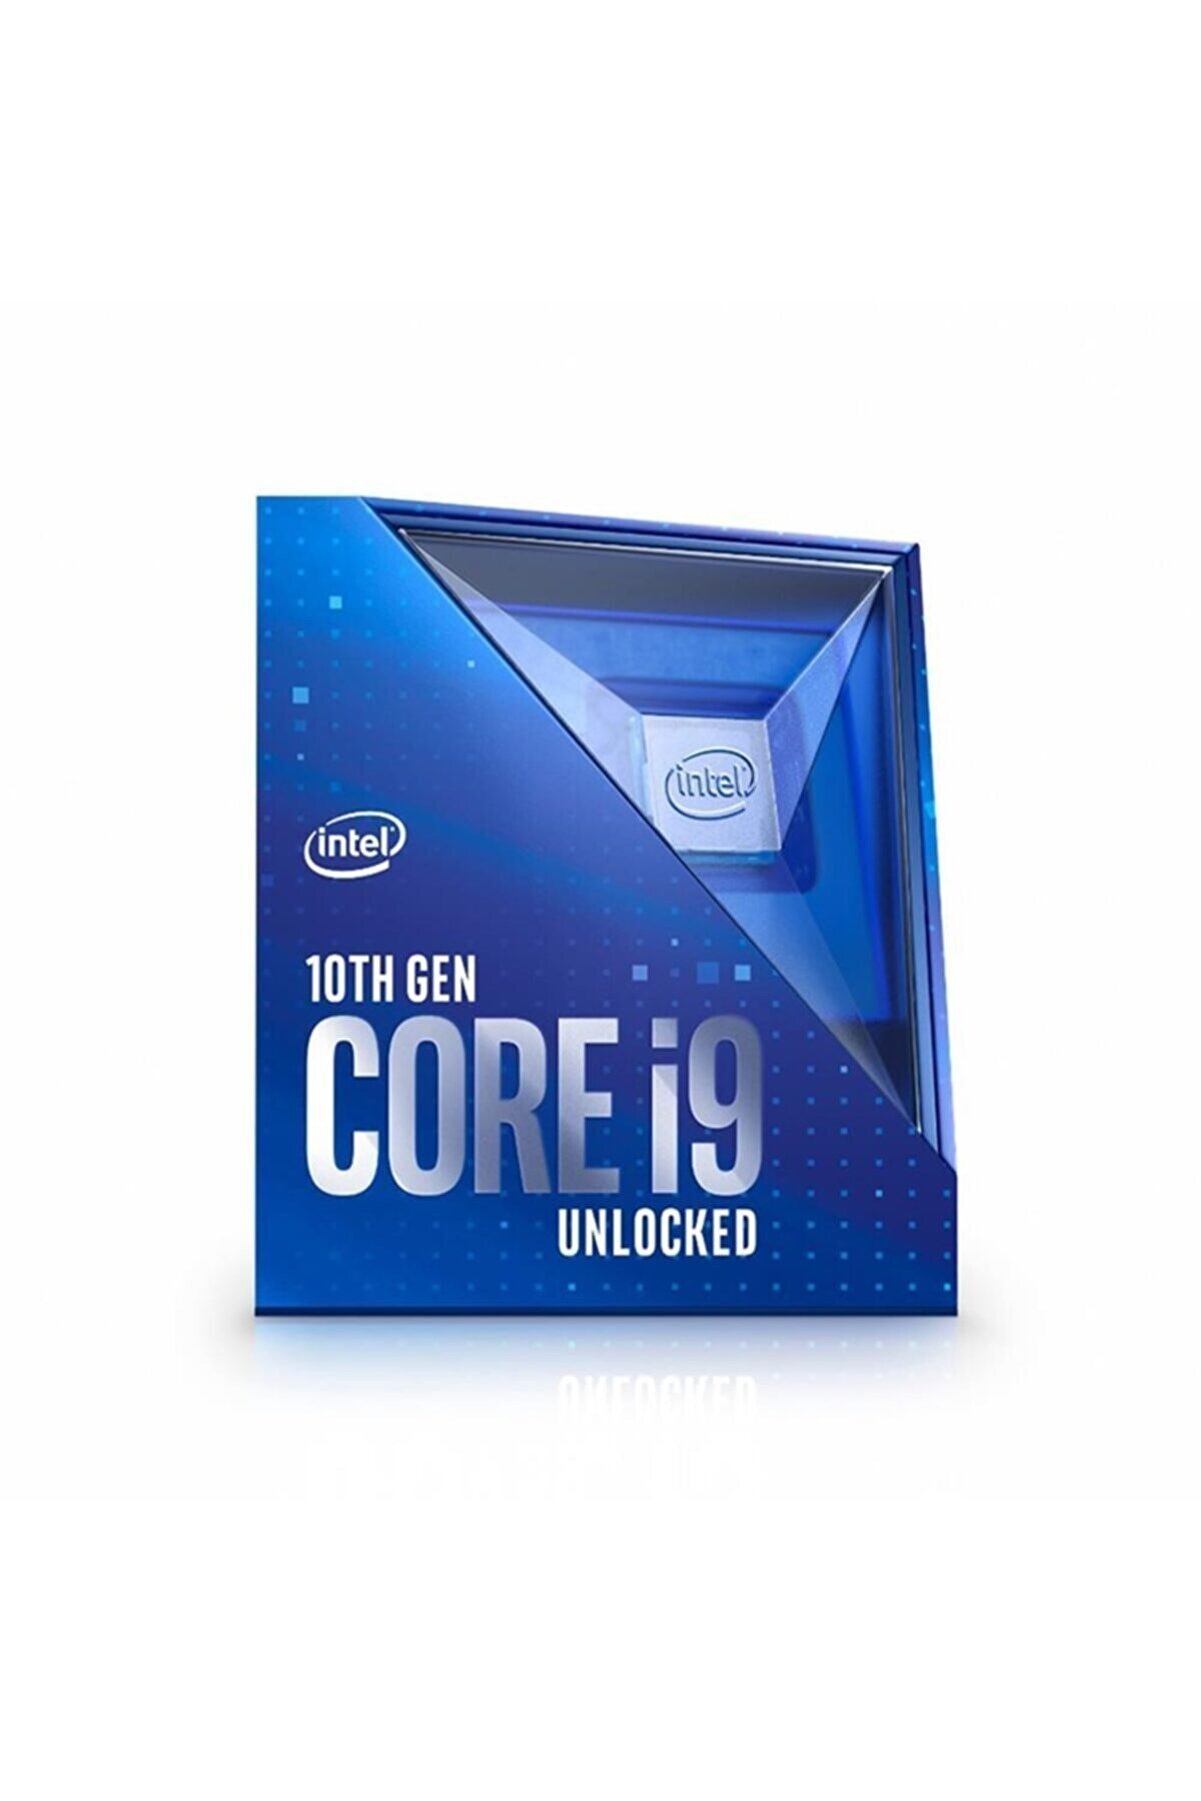 Intel Cometlake Core I9 10900k 3.7ghz 1200p 20mb Box (fansız) (125w) Uhd630